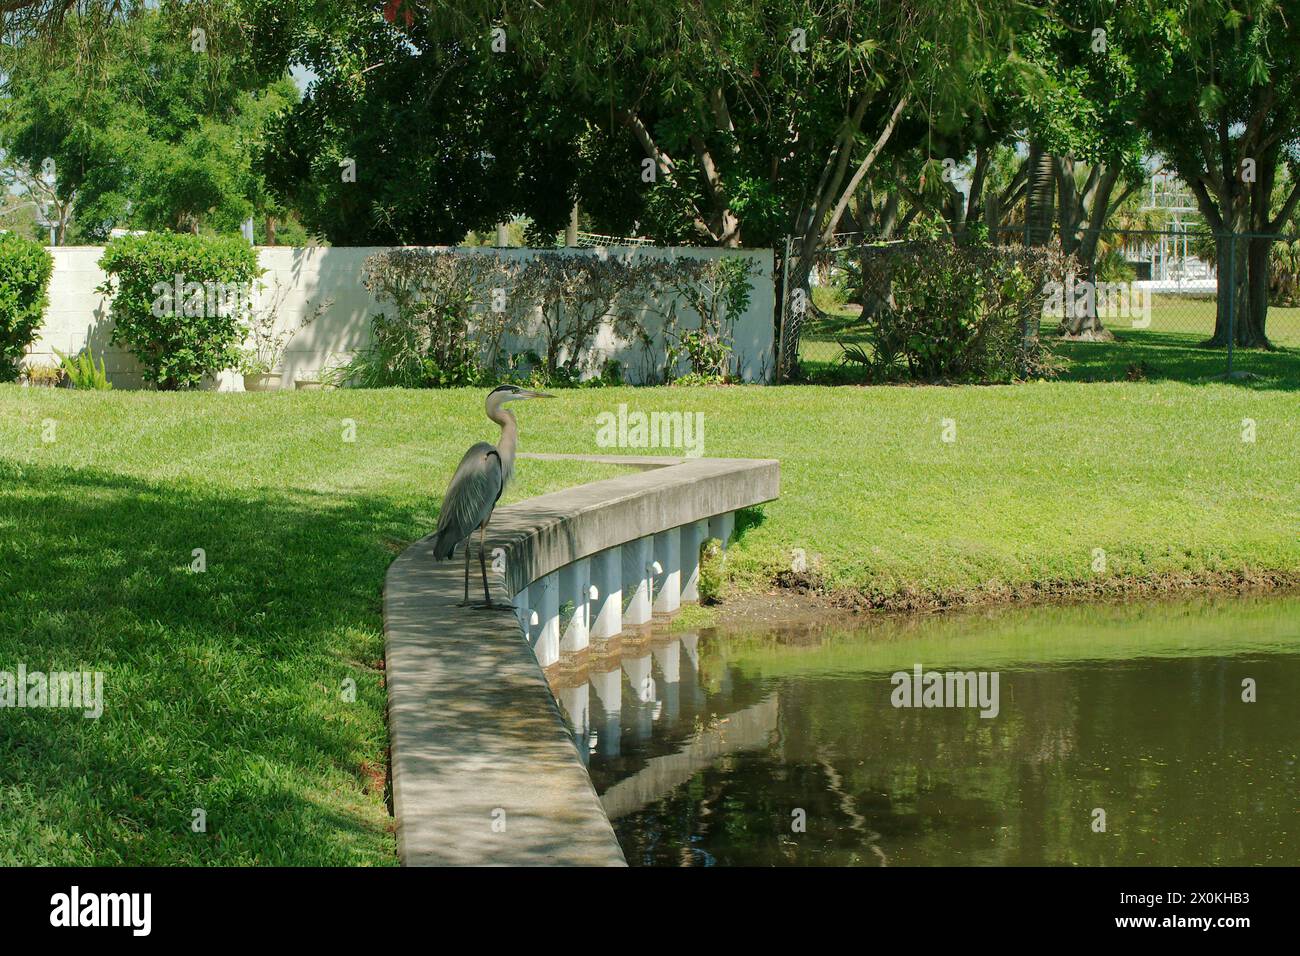 Blue Heron, der auf den Rand der Mauer blickt, sieht nach rechts. Waagerecht neben einem Teich und grünem Gras an einem sonnigen Tag. Großer Raum zum Kopieren. Reflexionen. Stockfoto